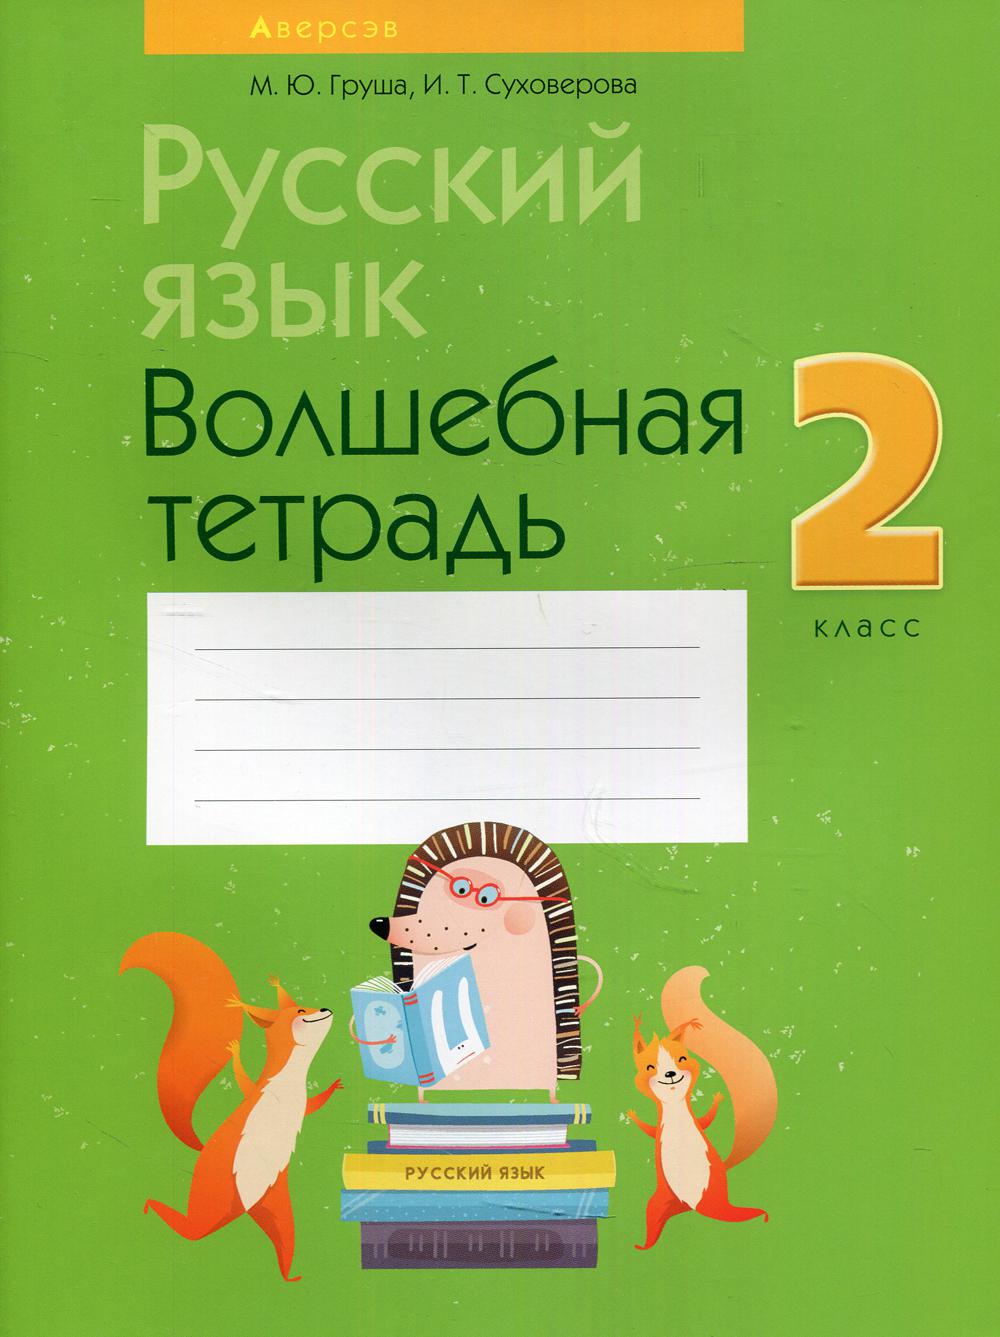 Тетрадь Русский язык. 2 класс: волшебная тетрадь 11-е изд., перераб.